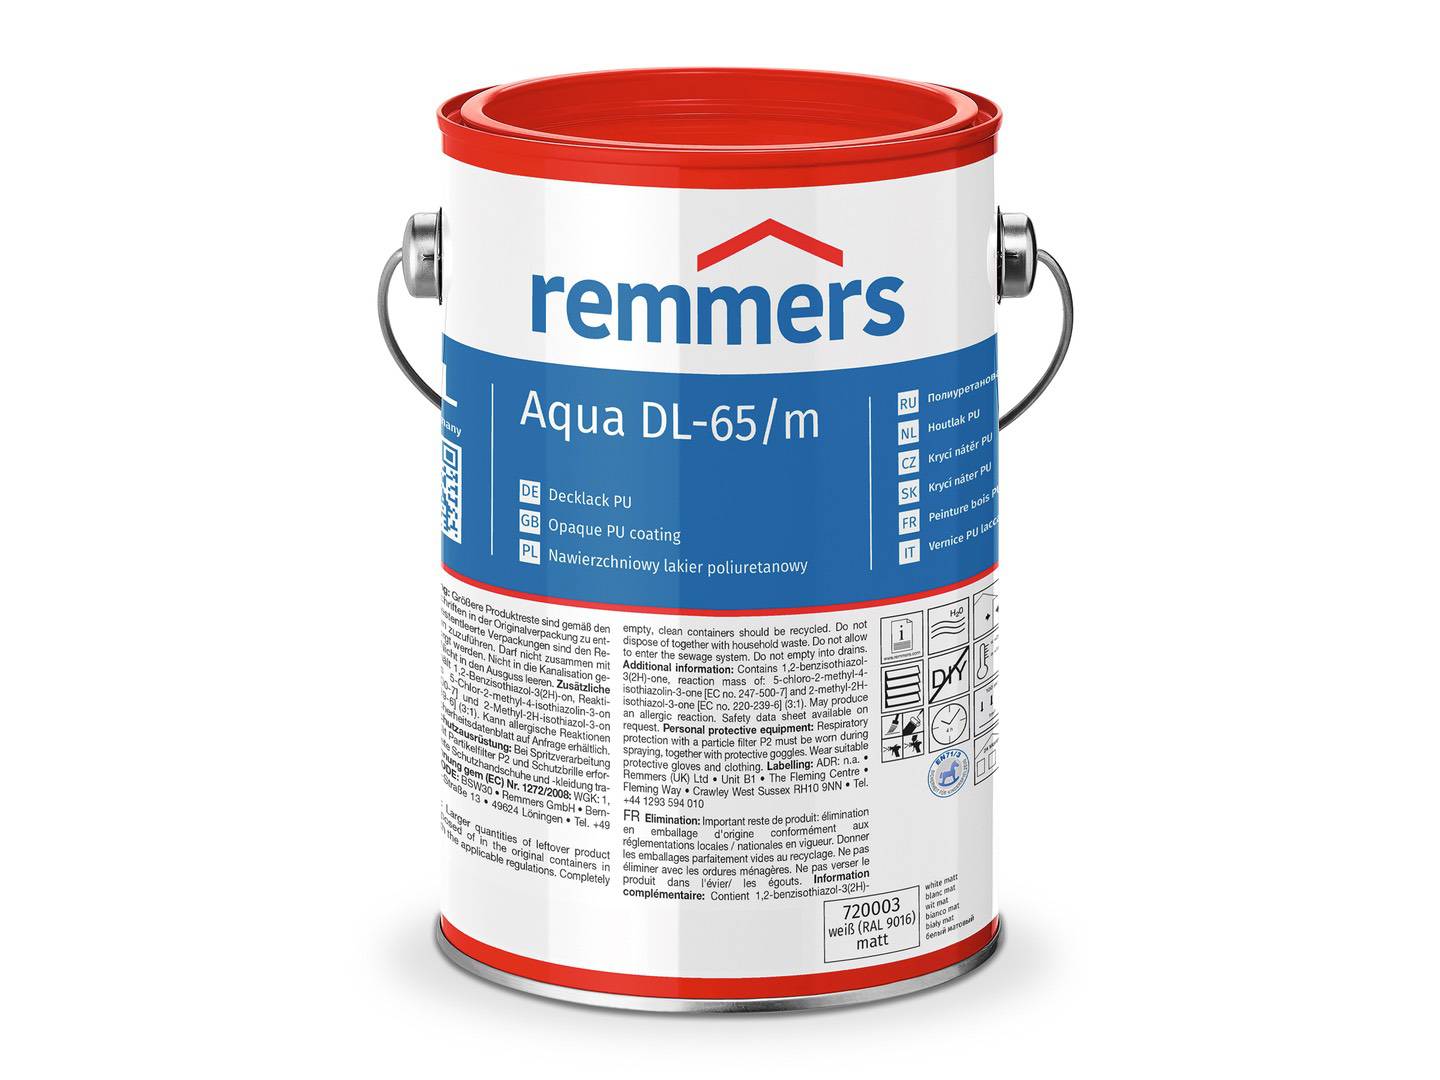 REMMERS Aqua DL-65-Decklack PU weiß (RAL 9016) matt 0,75 l